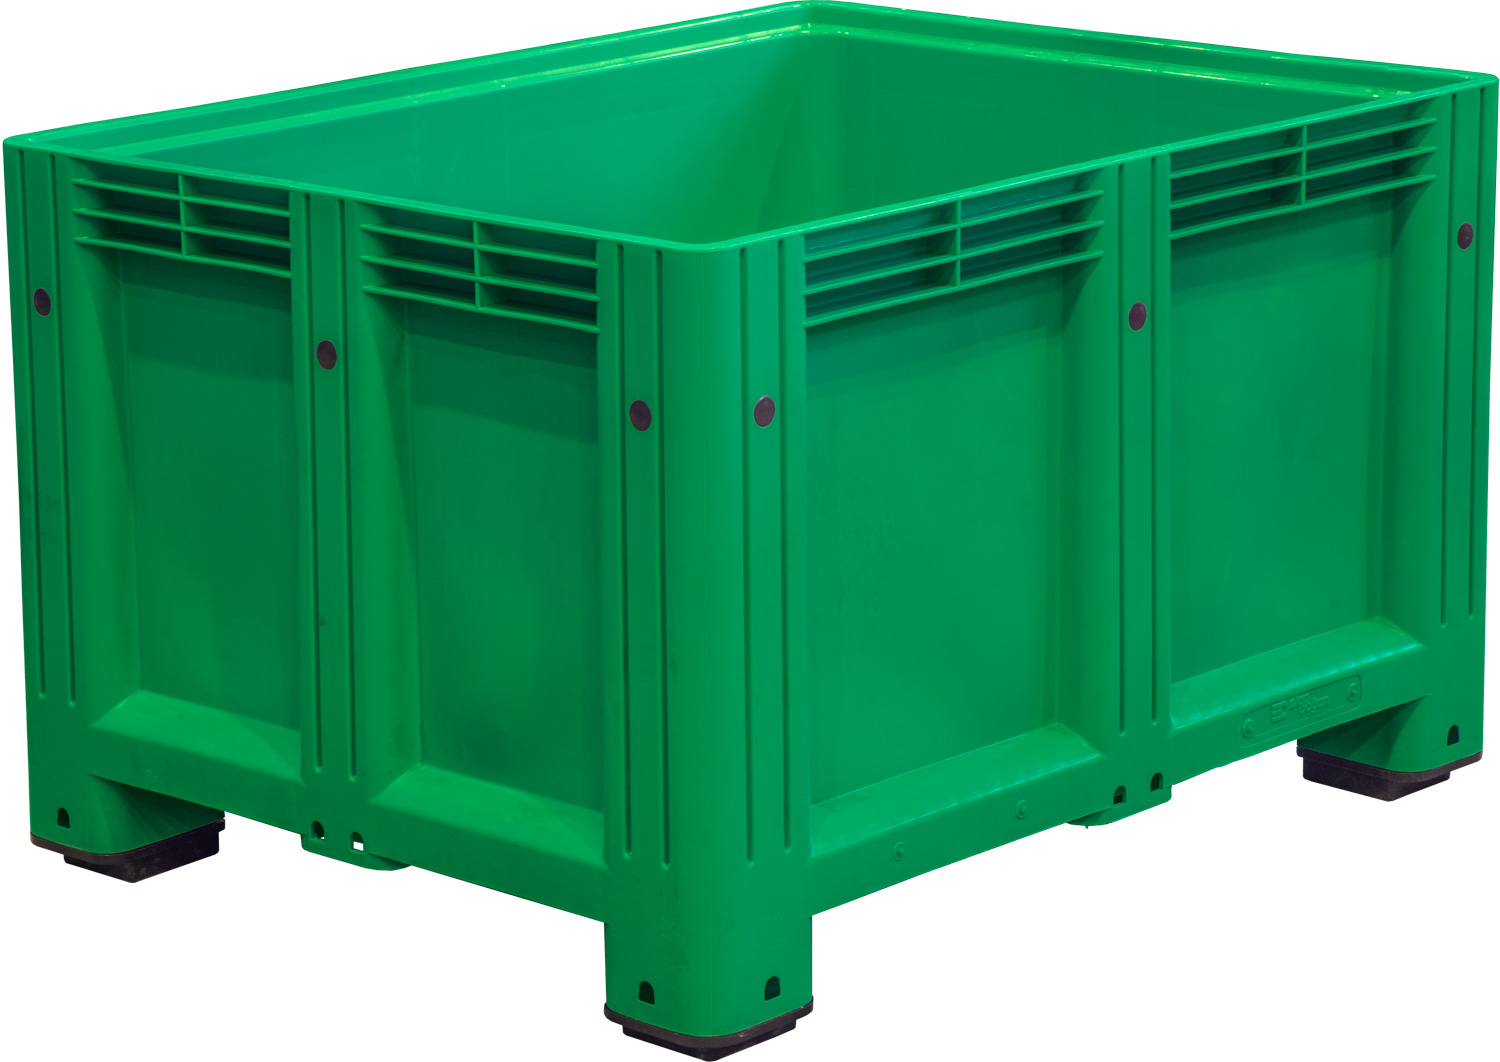 Big Box сплошной на ножках зеленый D-Box 1210 S (760) зеленый 1200x1000x760 мм Полиэтилен низкого давления (HDPE) 625 л